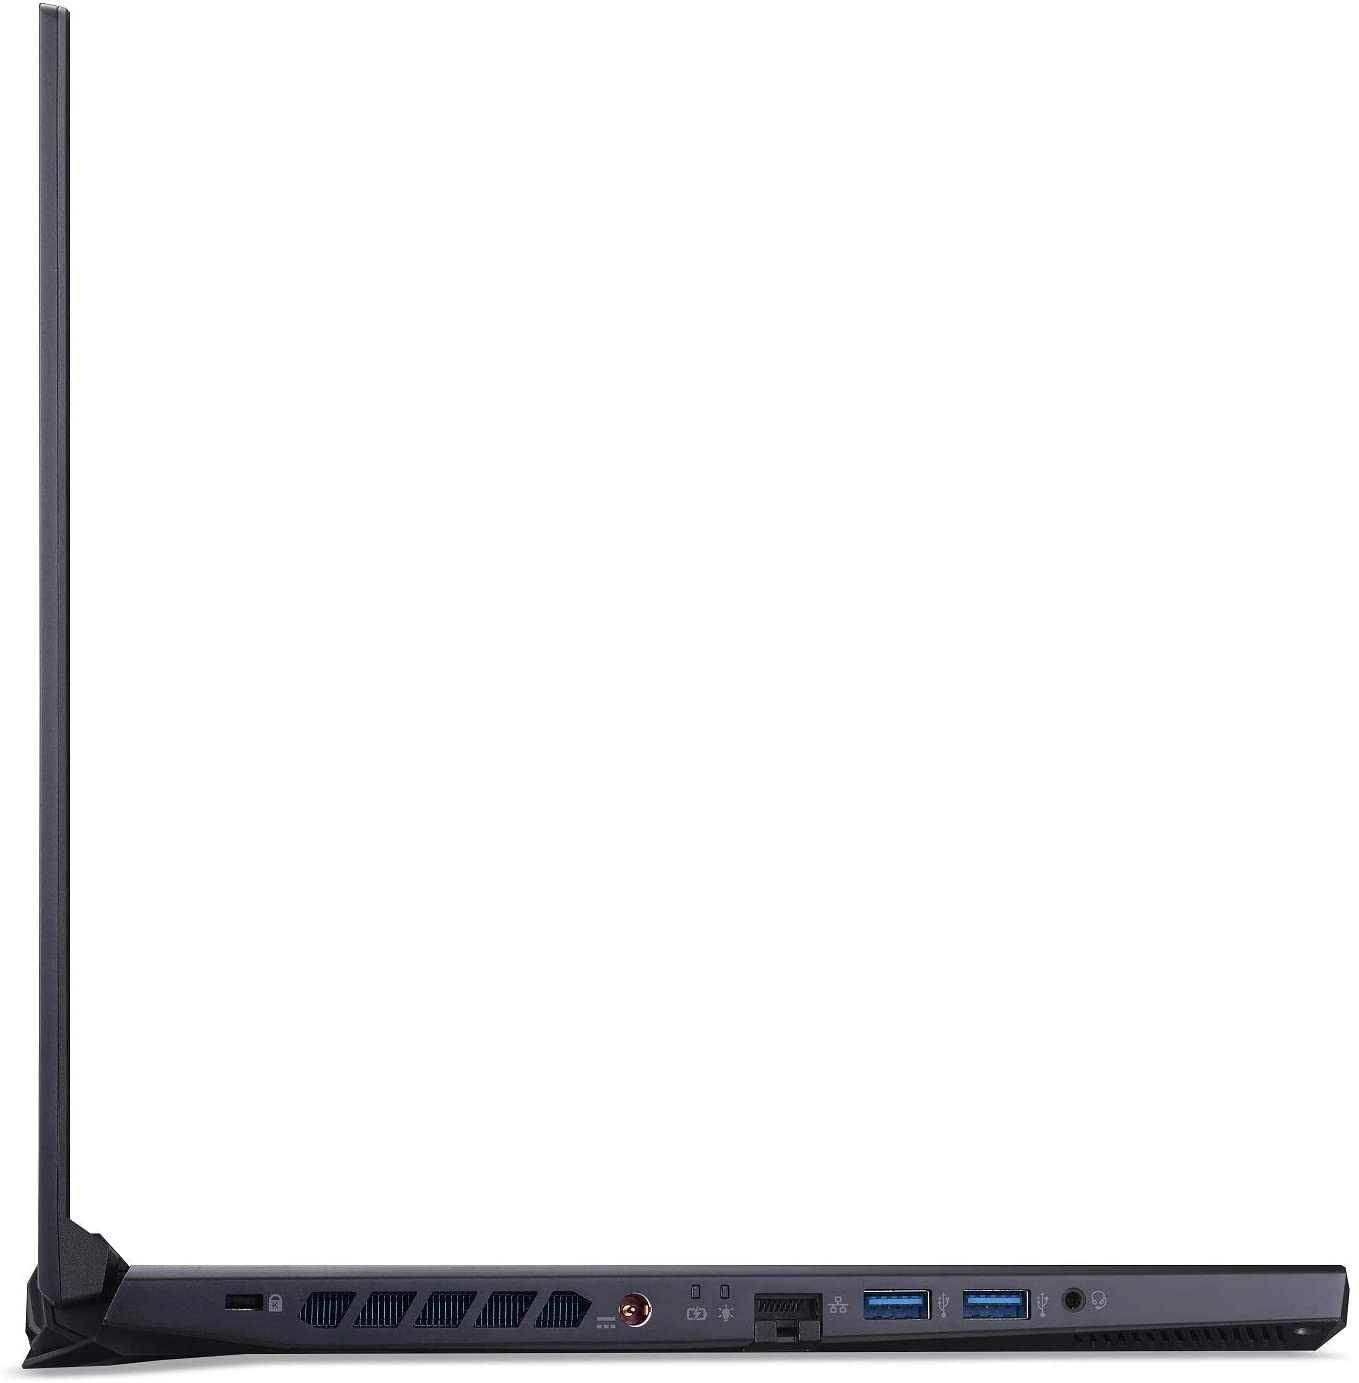 Acer PH315-52-710B laptop image